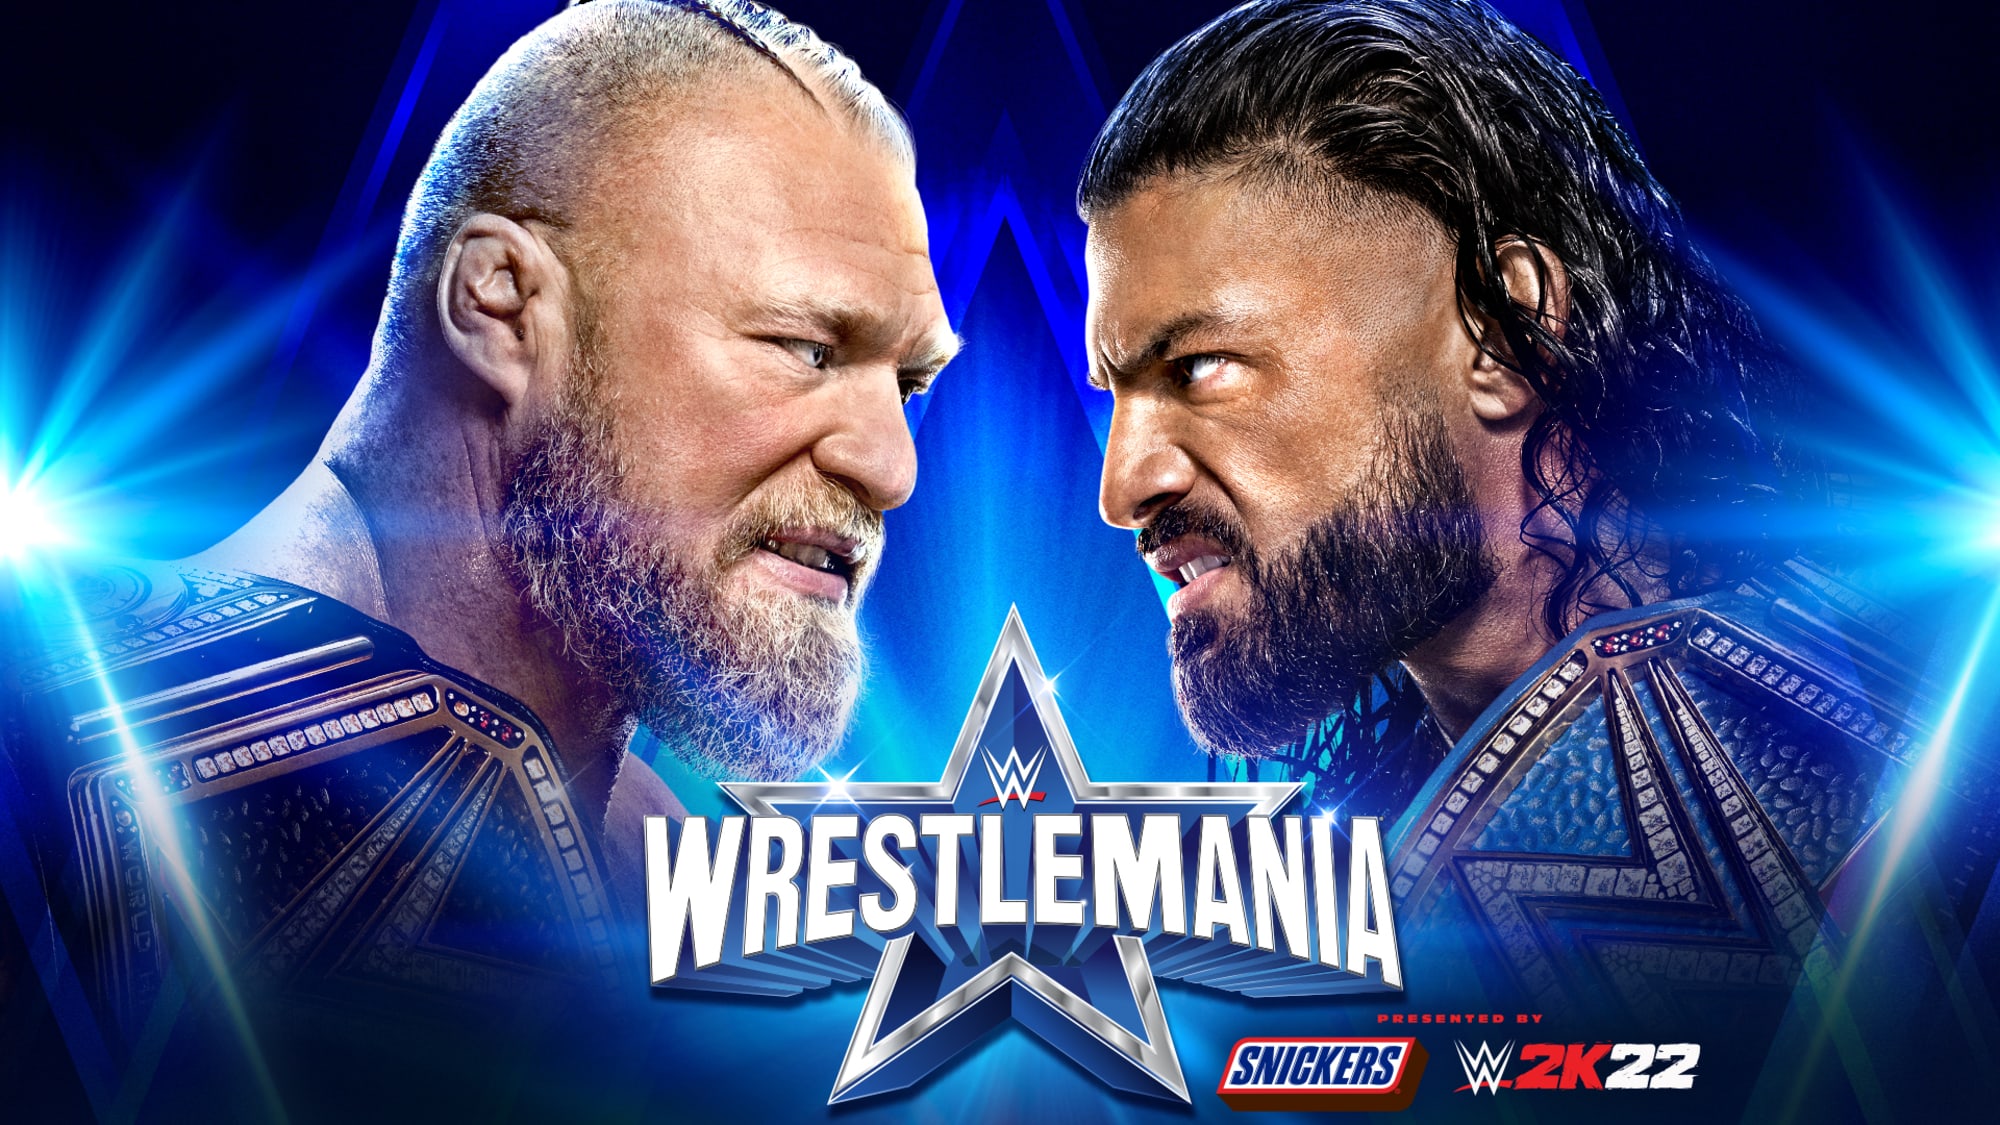 Chào mừng đến với sự kiện WWE WrestleMania 38, nơi những võ sĩ đỉnh cao của thế giới đối đầu trong trận chiến hấp dẫn nhất. Hãy xem và cùng hòa nhịp với sự phấn khích của khán giả!